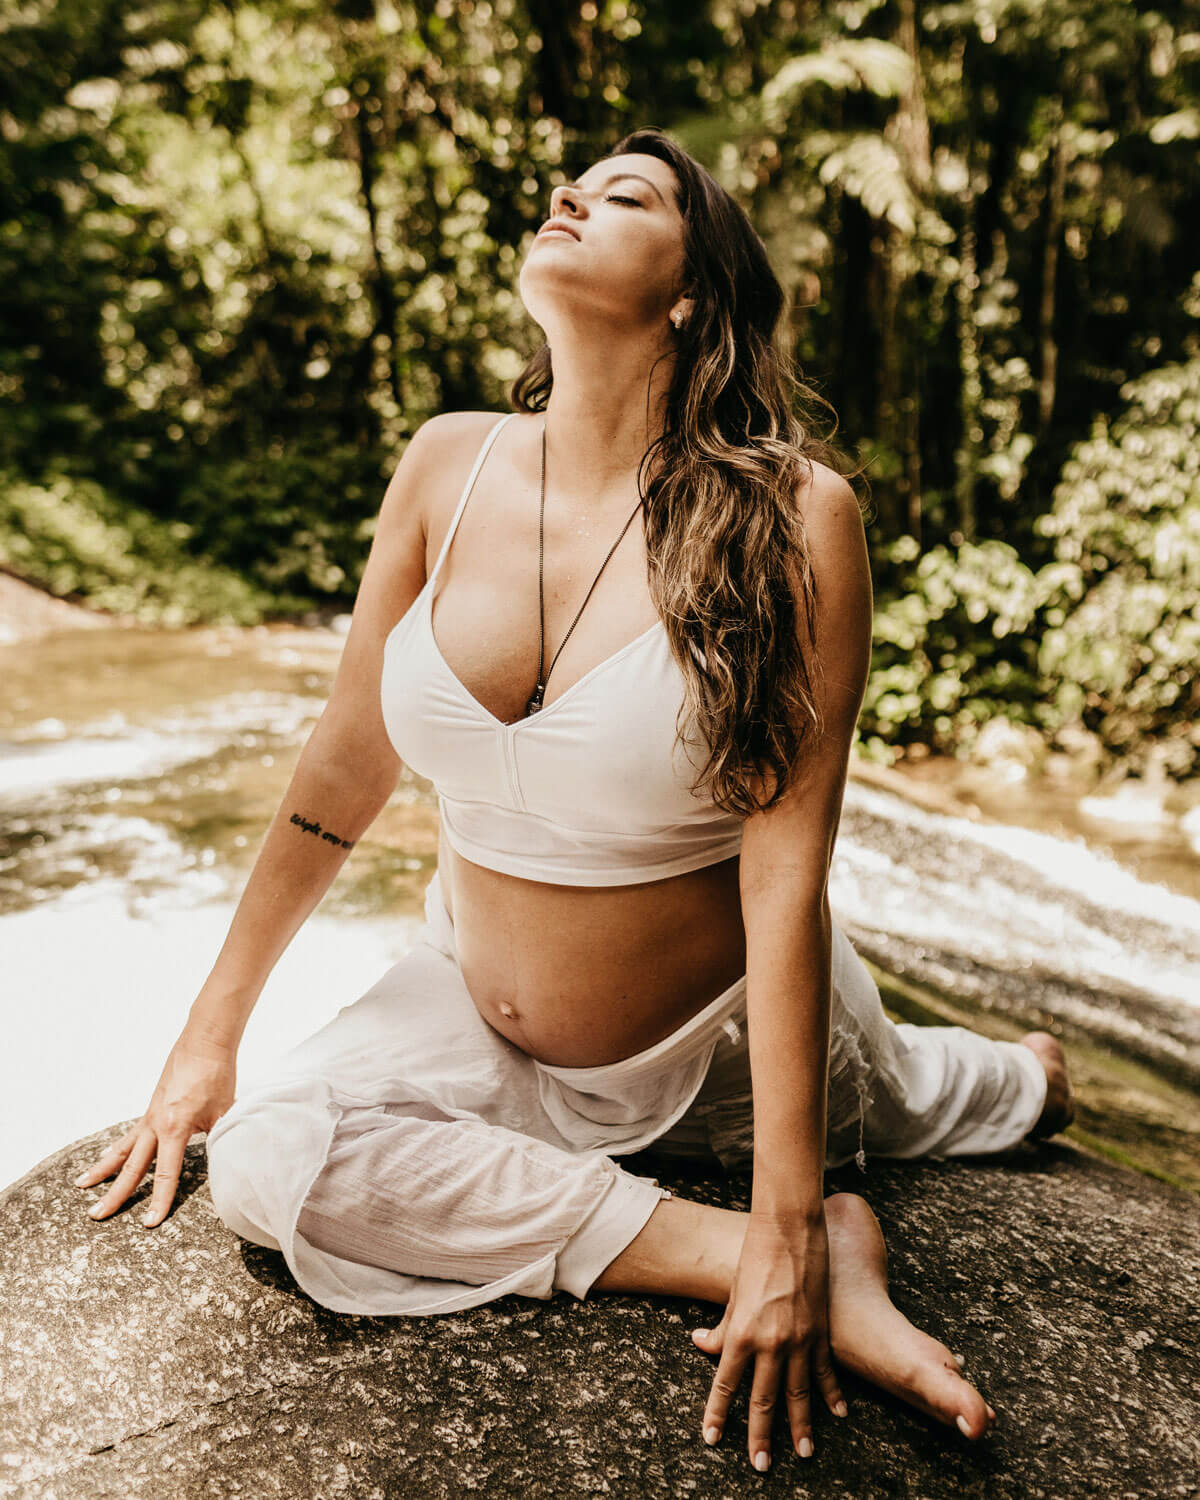 Yoga in Pregnancy - Poses & Tips